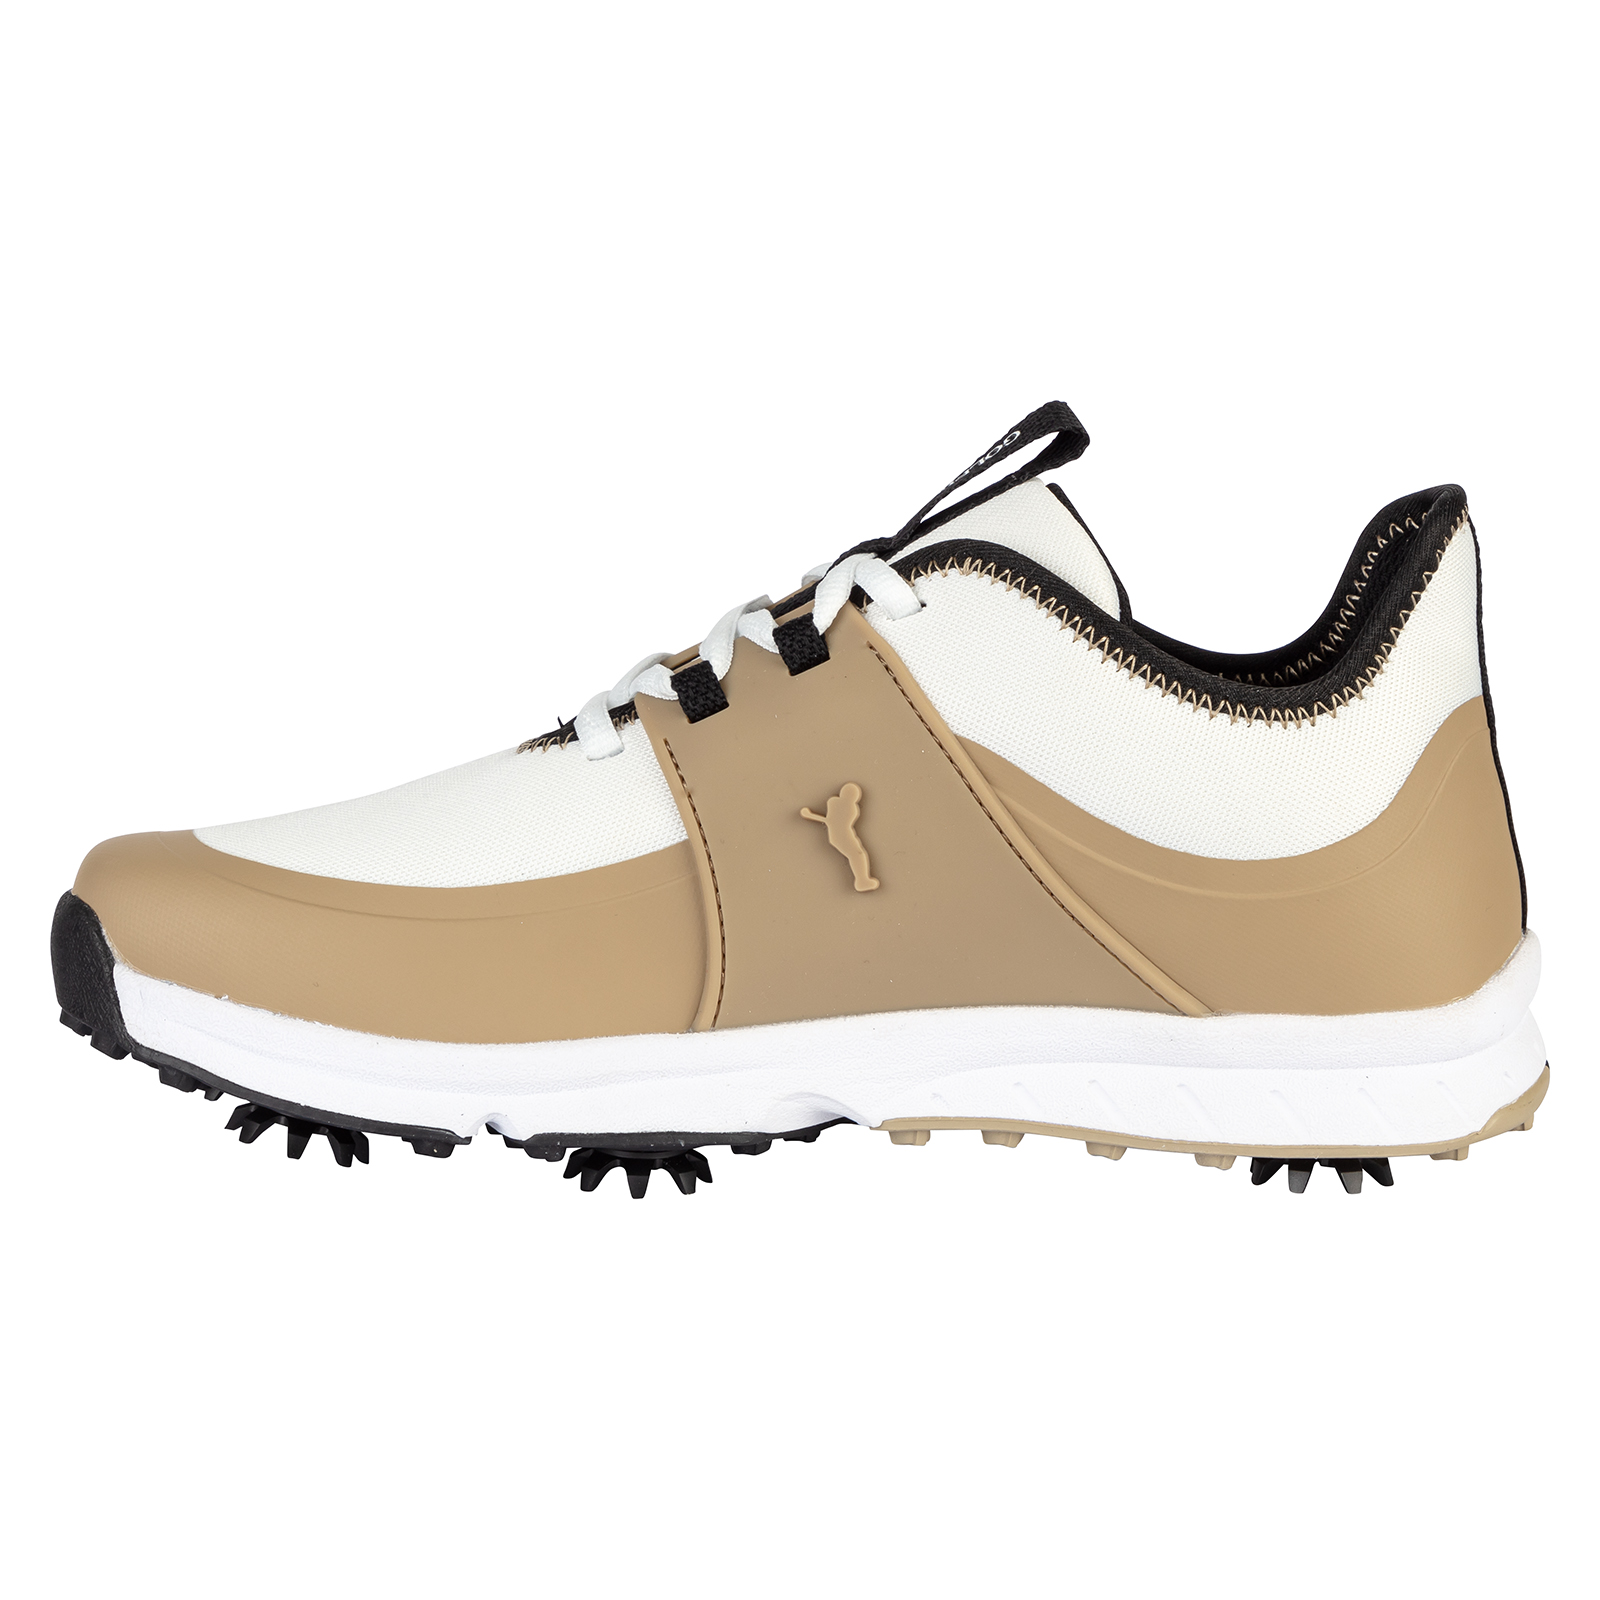 Wasserfeste Golf Schuhe für Damen mit abnehmbaren Spikes